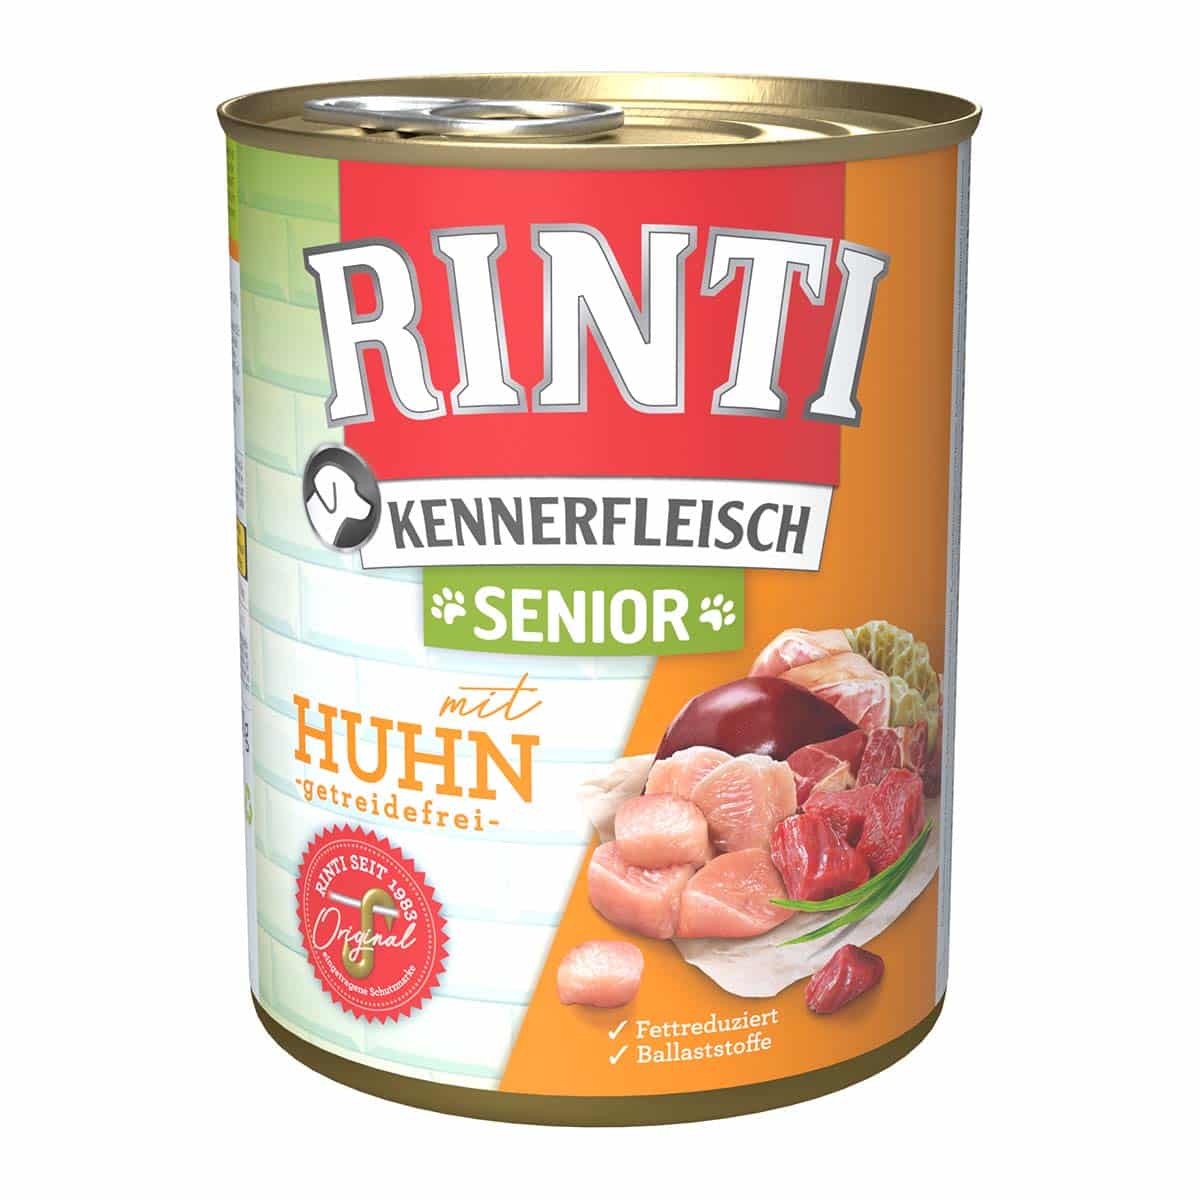 Rinti Kennerfleisch Senior mit Huhn 24x800g